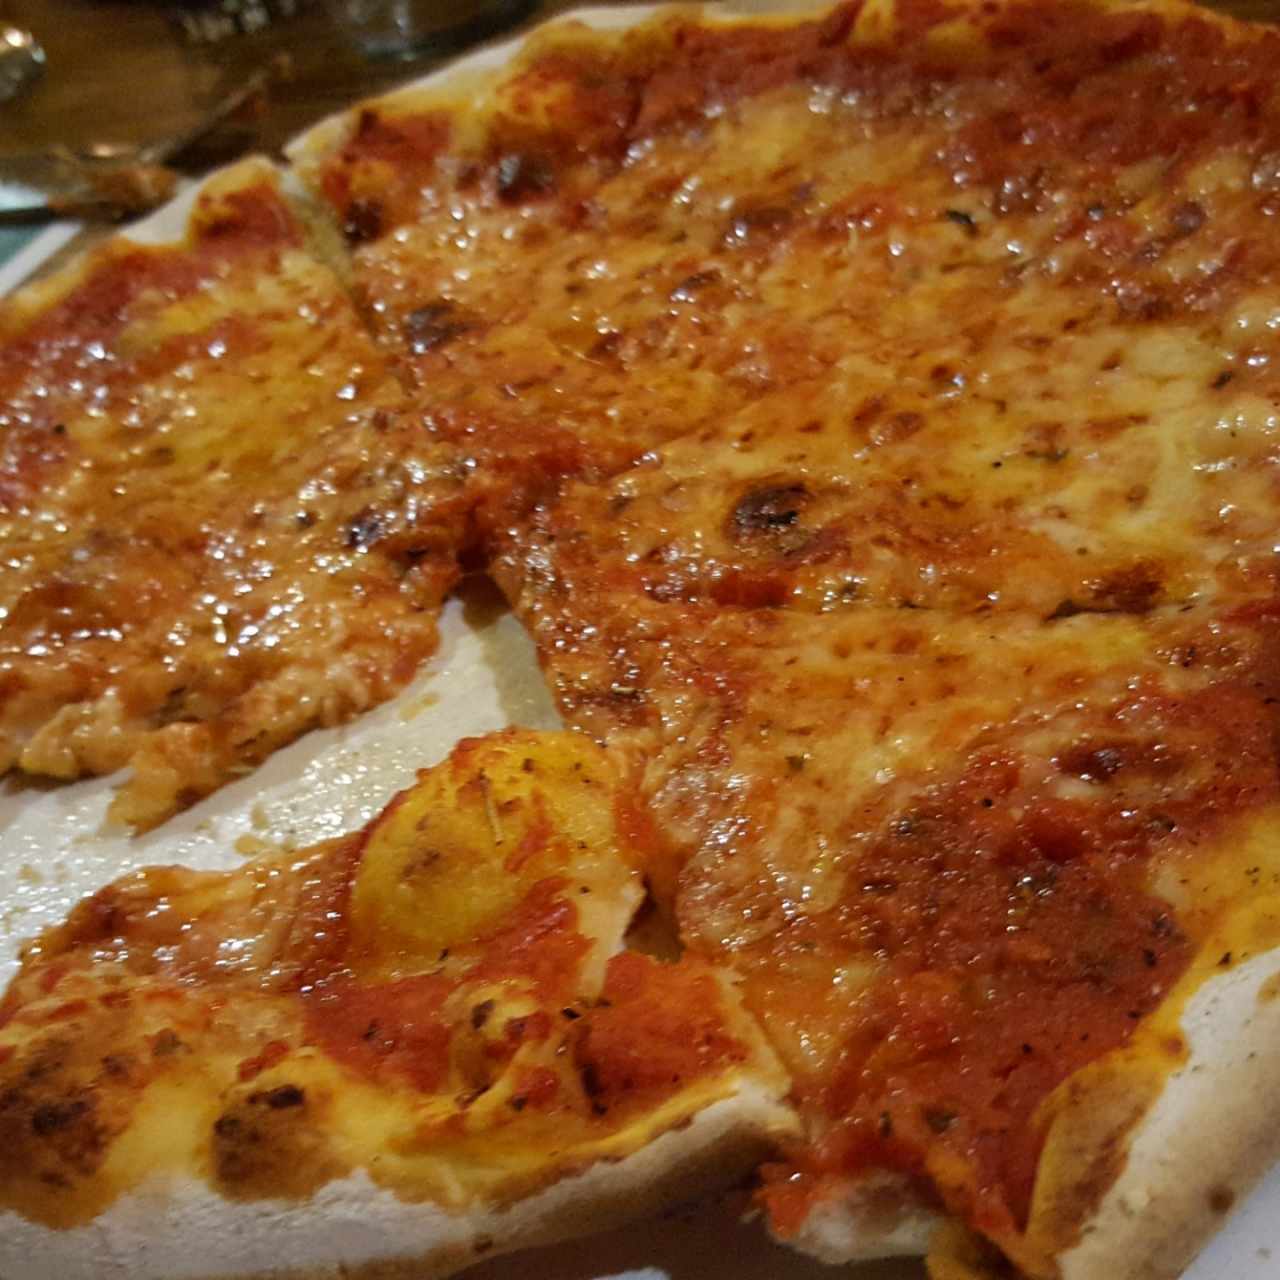 Pizza margarita